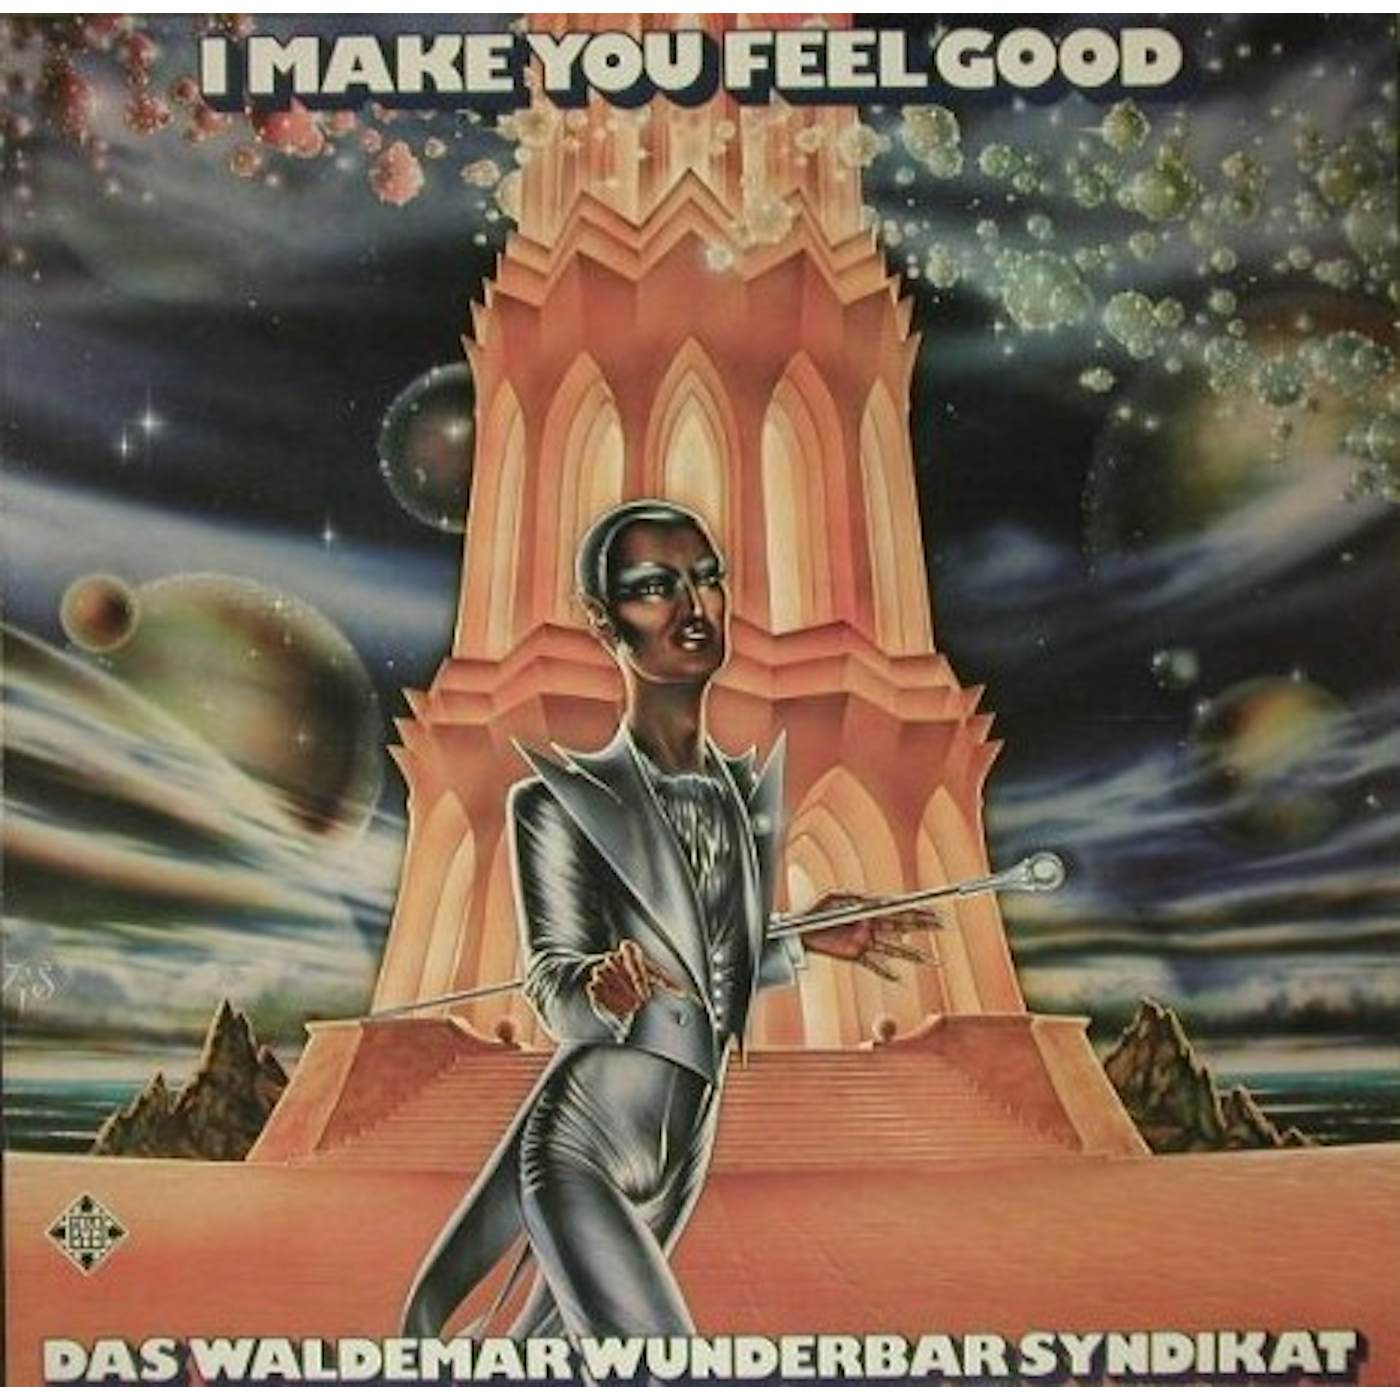 Das Waldemar Wunderbar Syndika I Make You Feel Good Vinyl Record